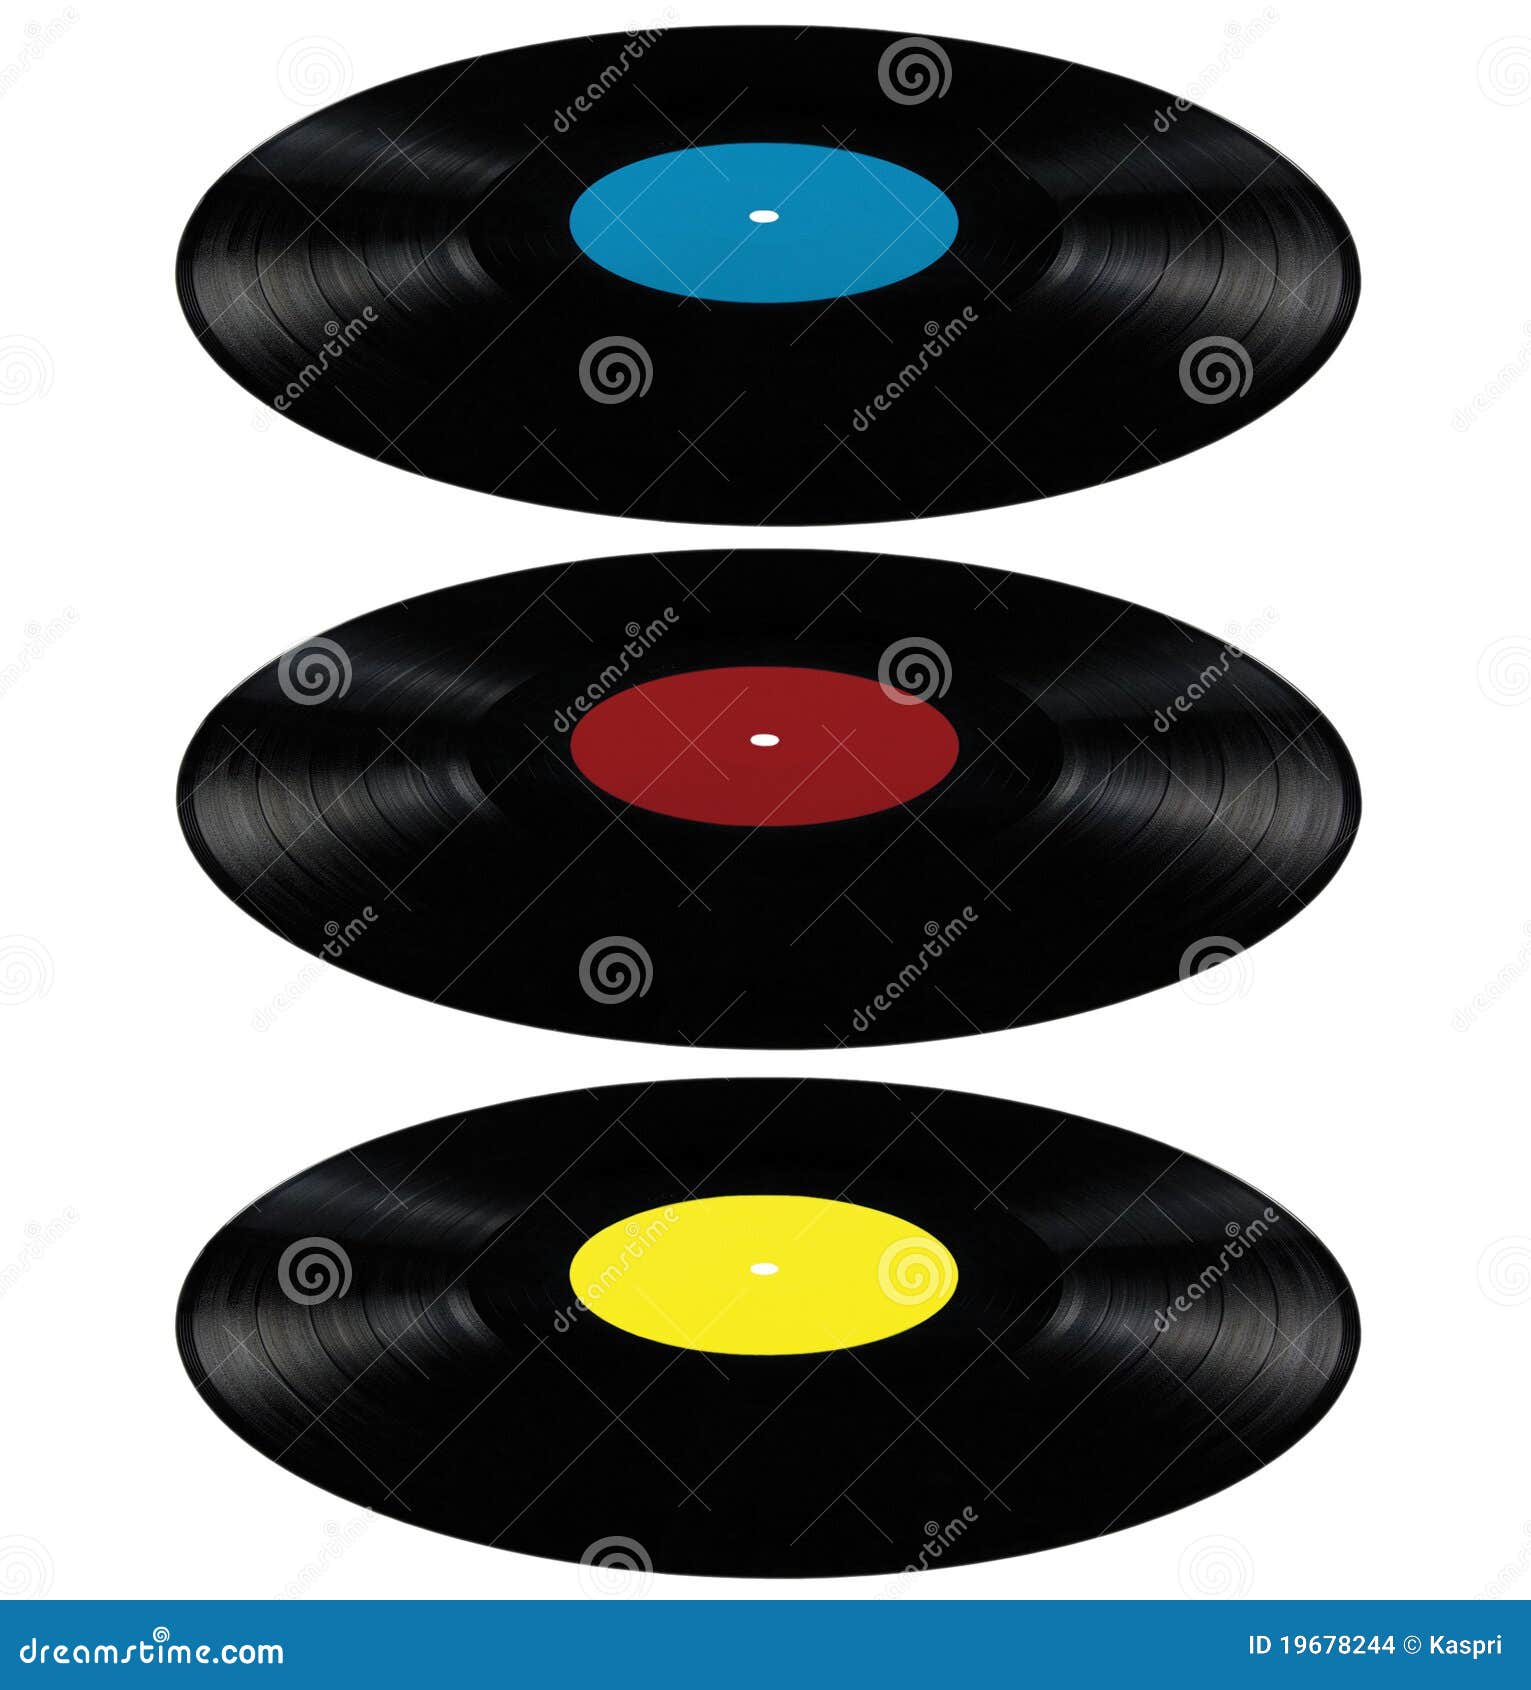 Azzurro rosso del disco del gioco lungo del disco dell'album record del lp del vinile. Dischi neri dell'album del lp del vinile; dischi isolati del gioco lungo con il contrassegno in bianco nella ciano prospettiva blu, rossa, gialla